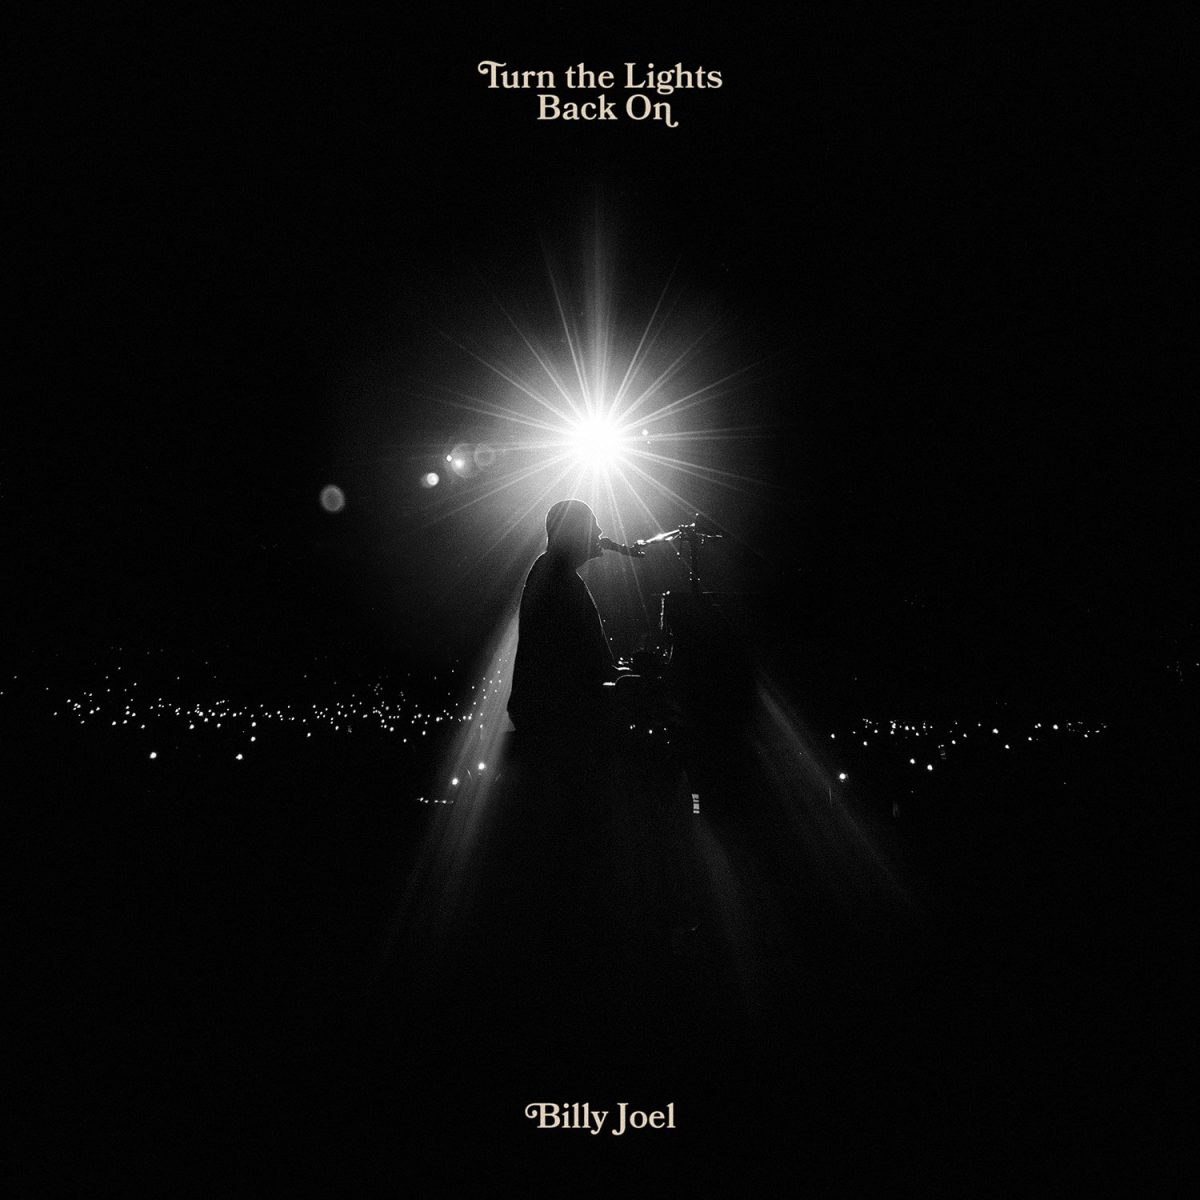 Album art for Billy Joel’s new single “Turn the Lights Back On.”